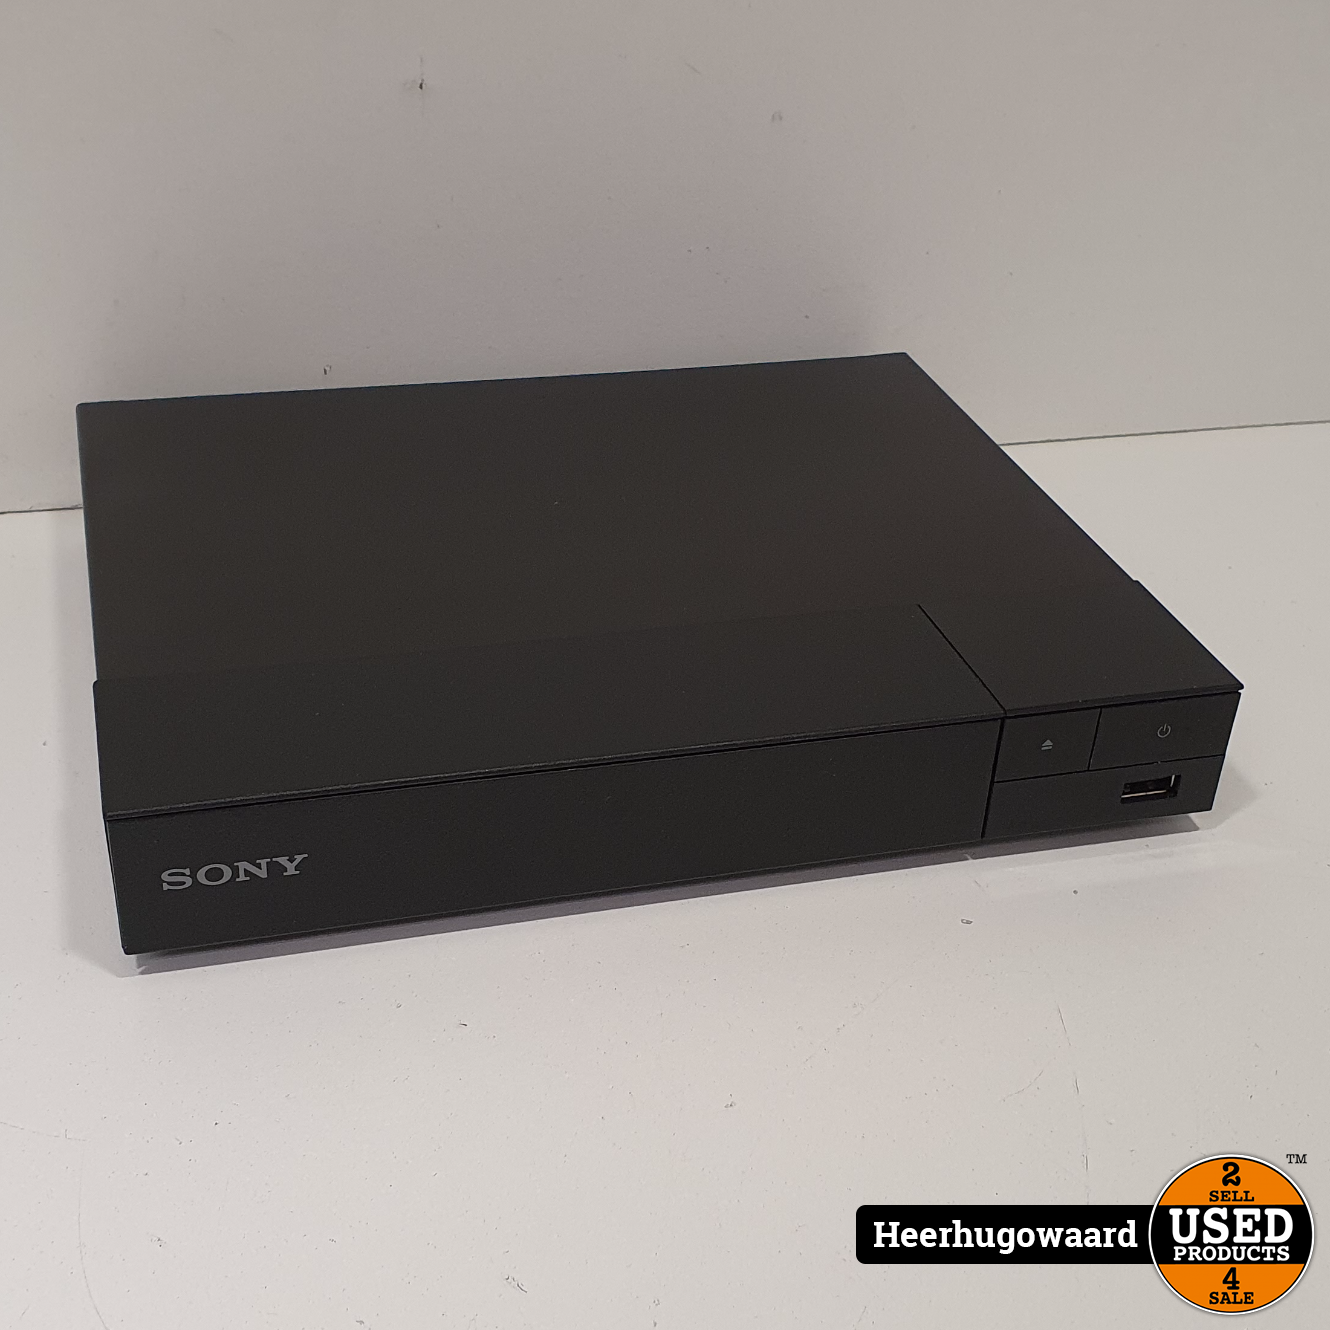 toevoegen kruis martelen Sony BDP-S1700 Blu-Ray / DVD Speler in Nette Staat - Used Products  Heerhugowaard